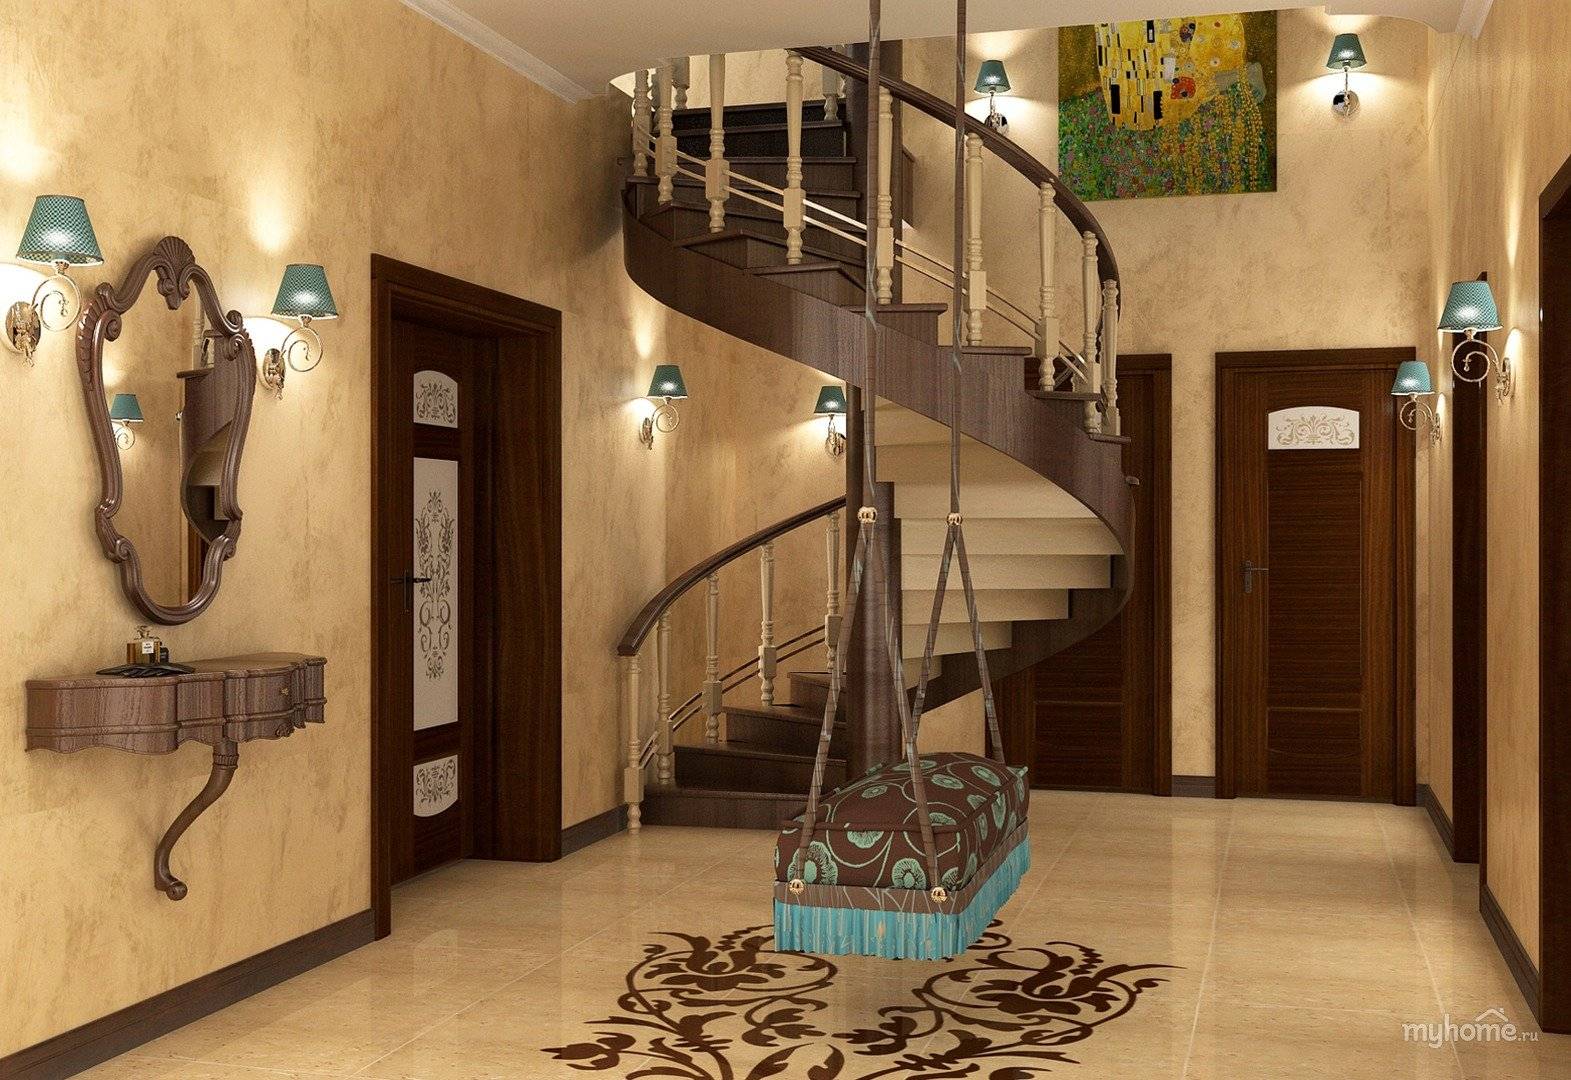 Привлекательный интерьер прихожей с лестницей в частном доме своими руками: варианты и стили оформления, много фото, видео